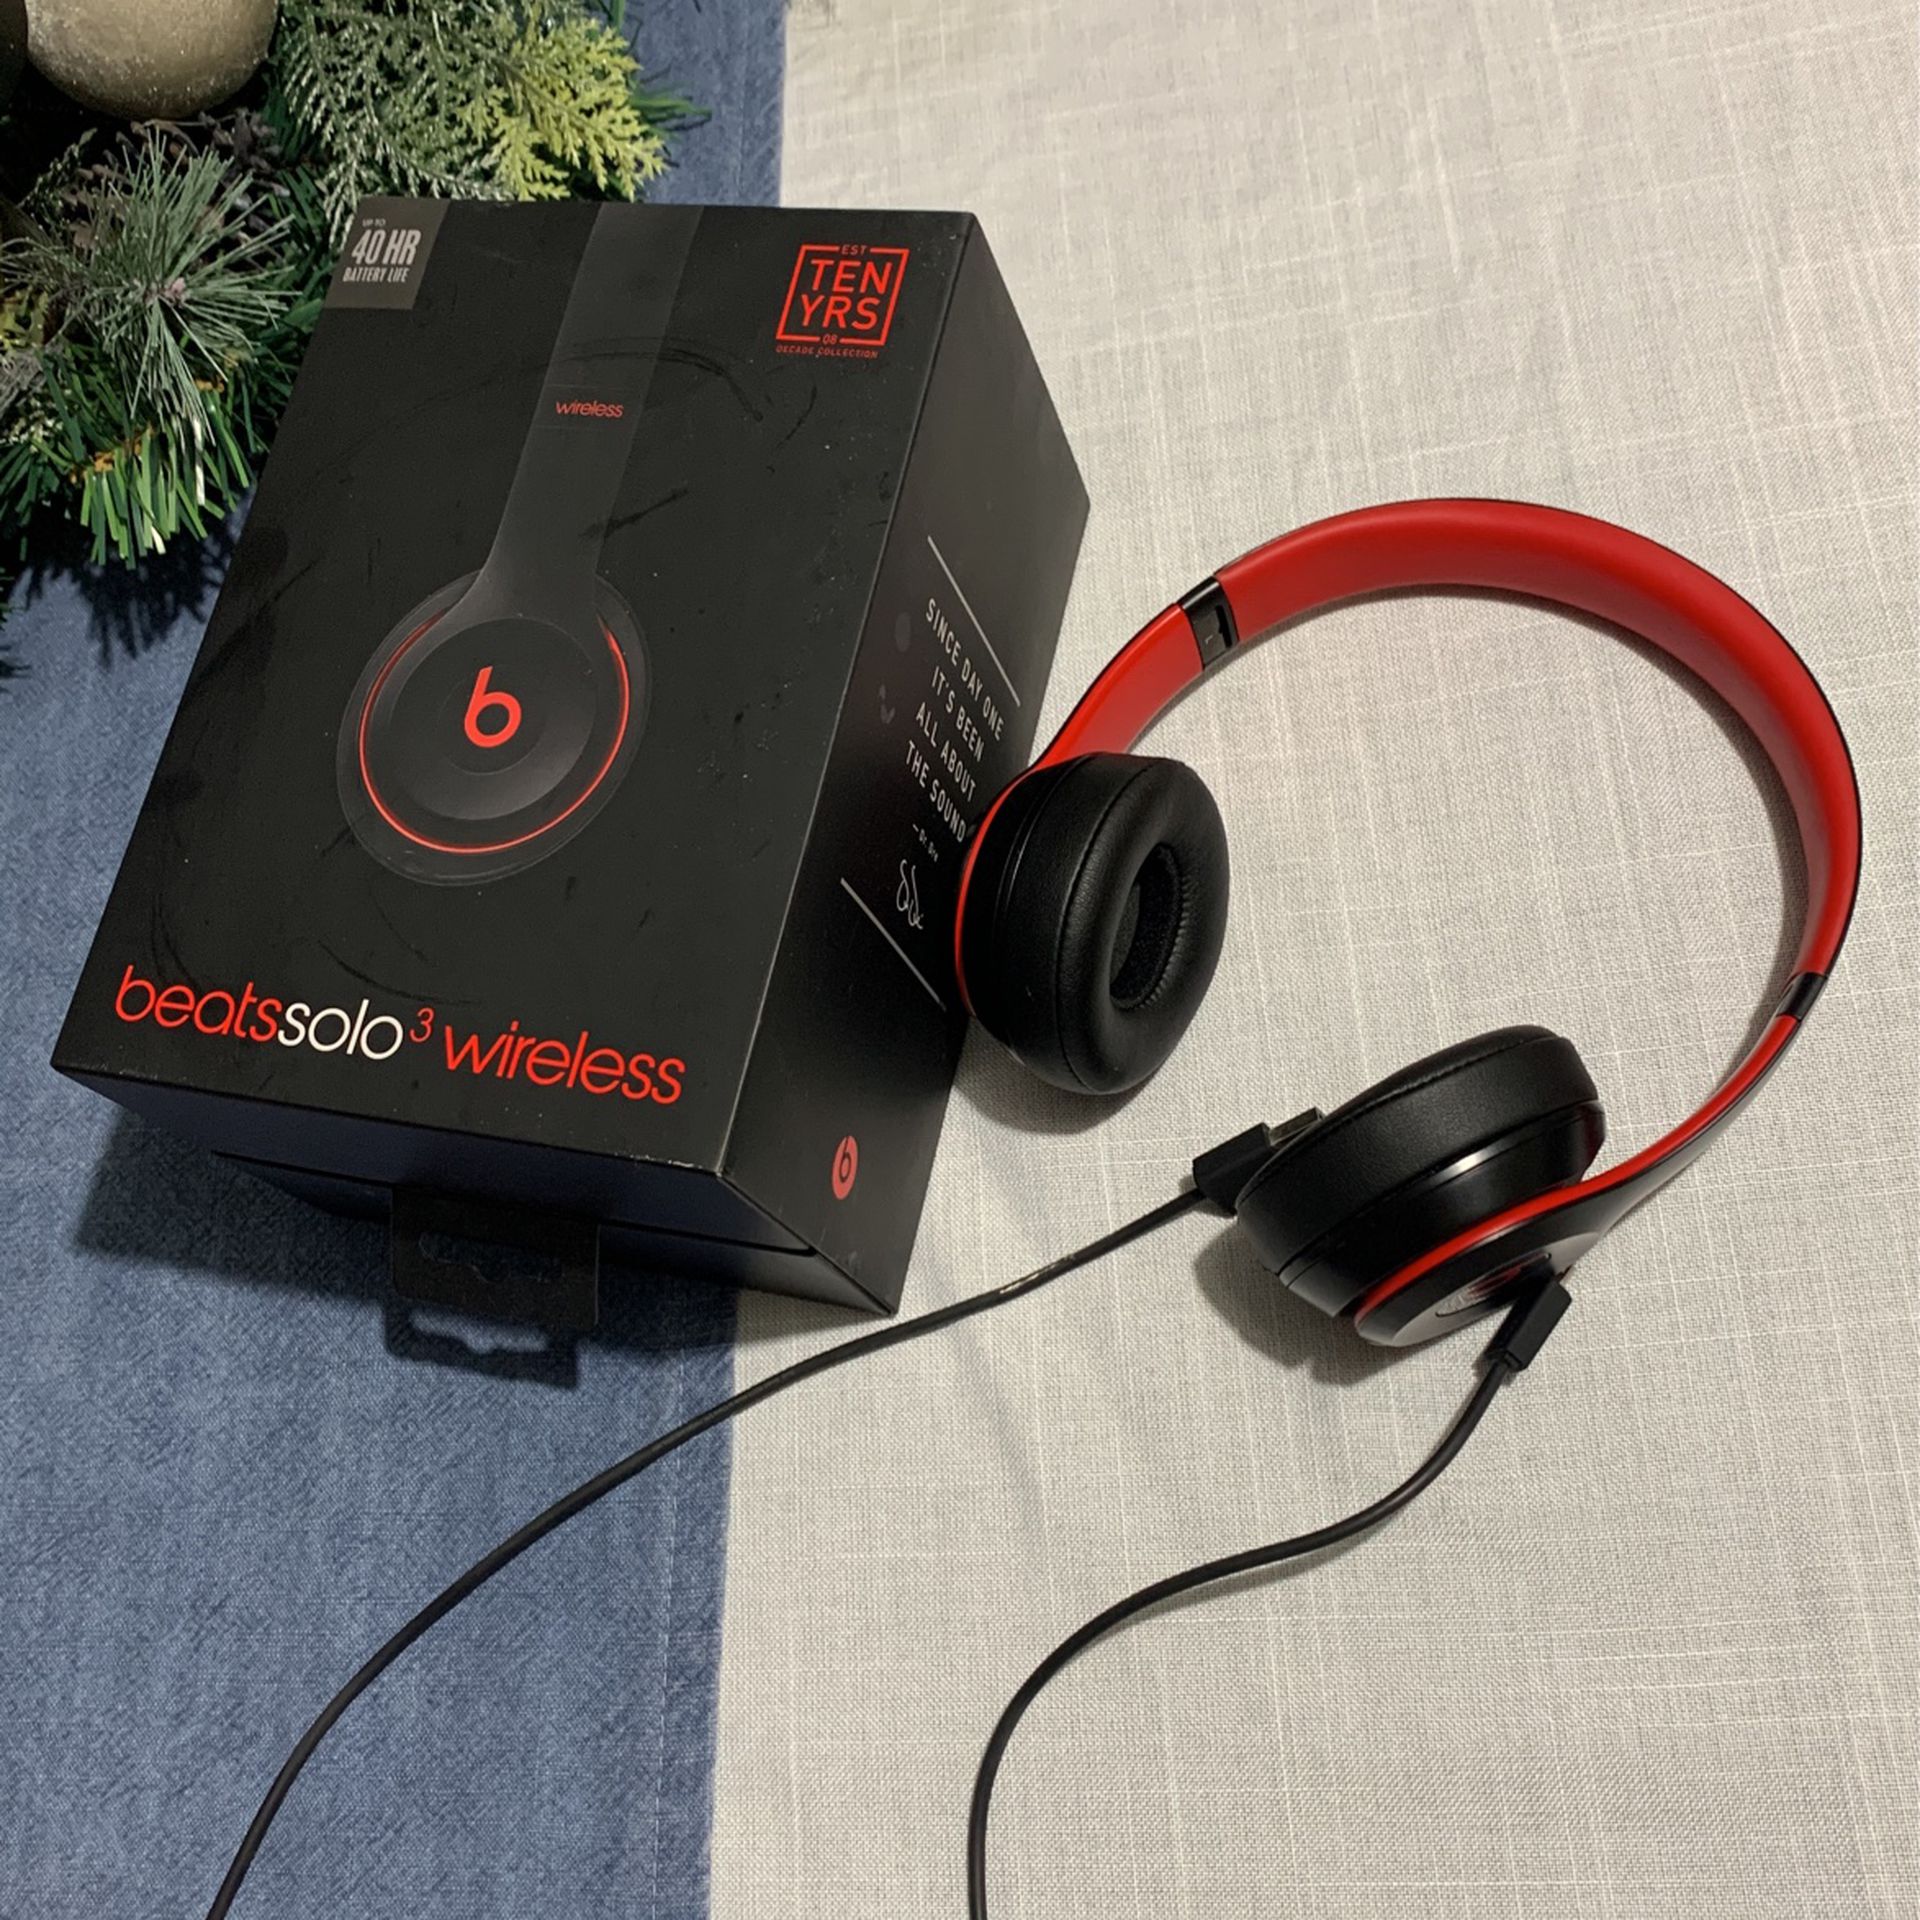 Beats Solo 3 Wireless $170